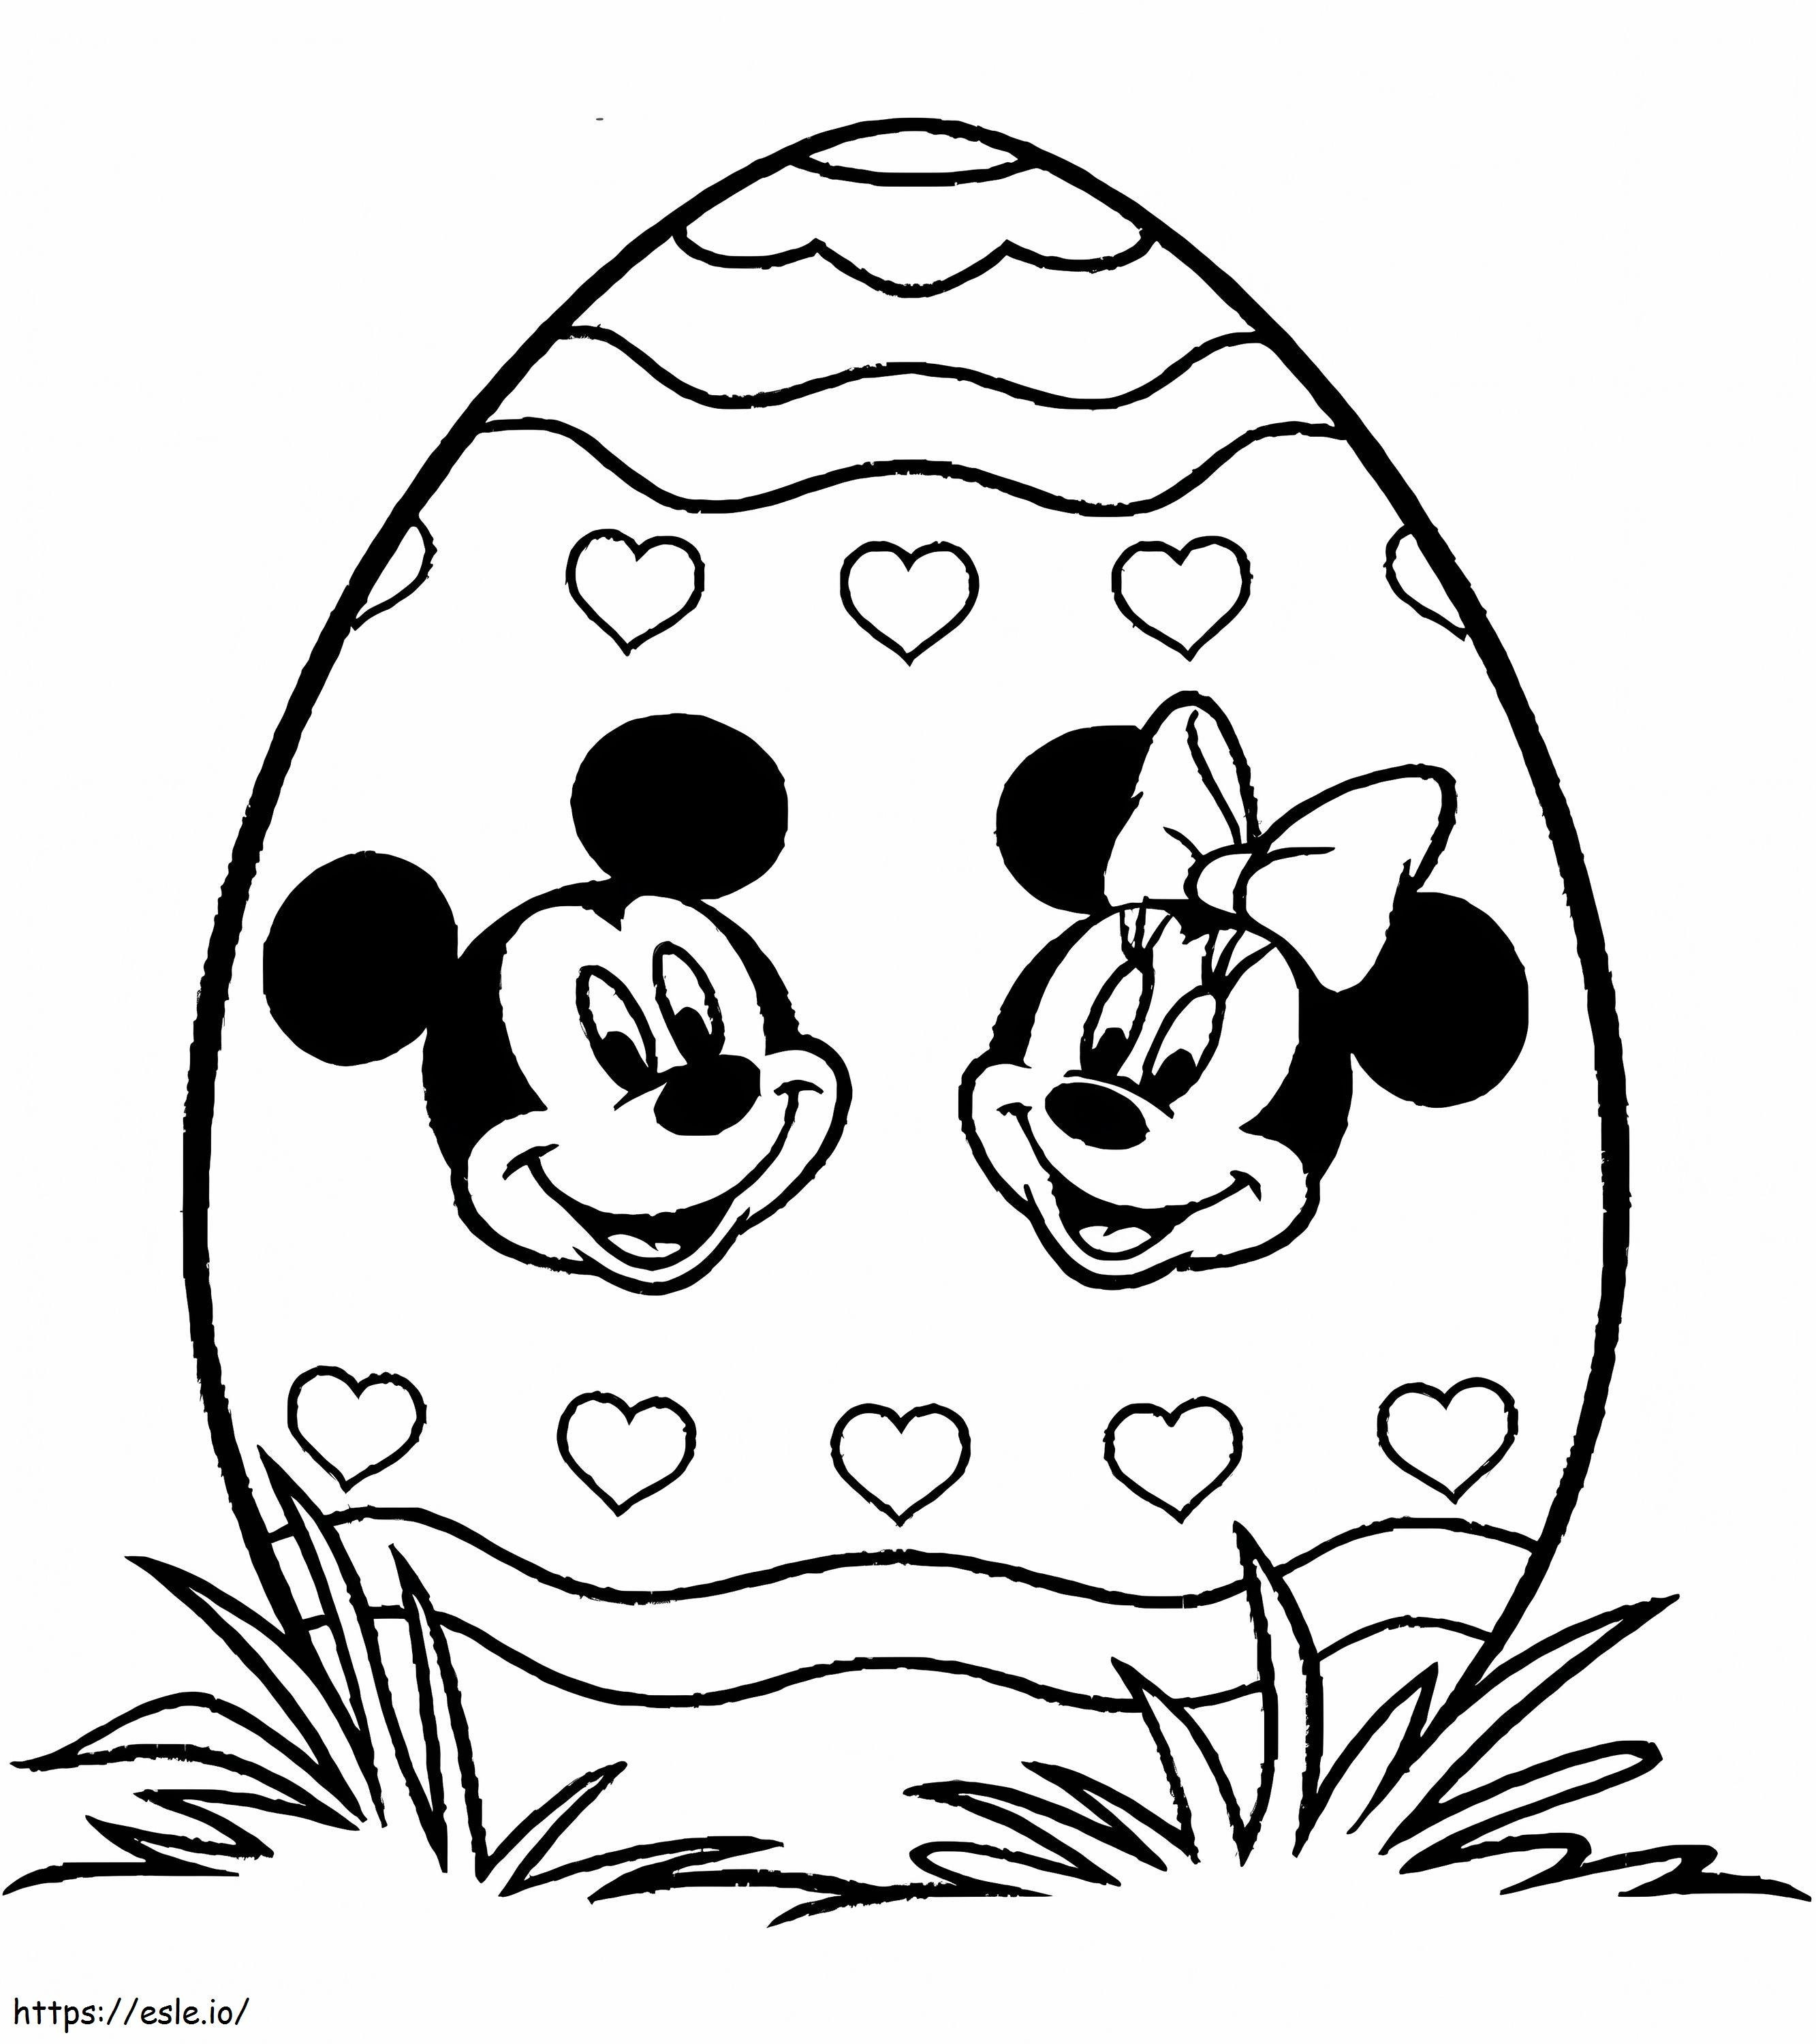 Mickey Mouse ve Minnie Mouse'lu Baskılı Paskalya Yumurtaları boyama